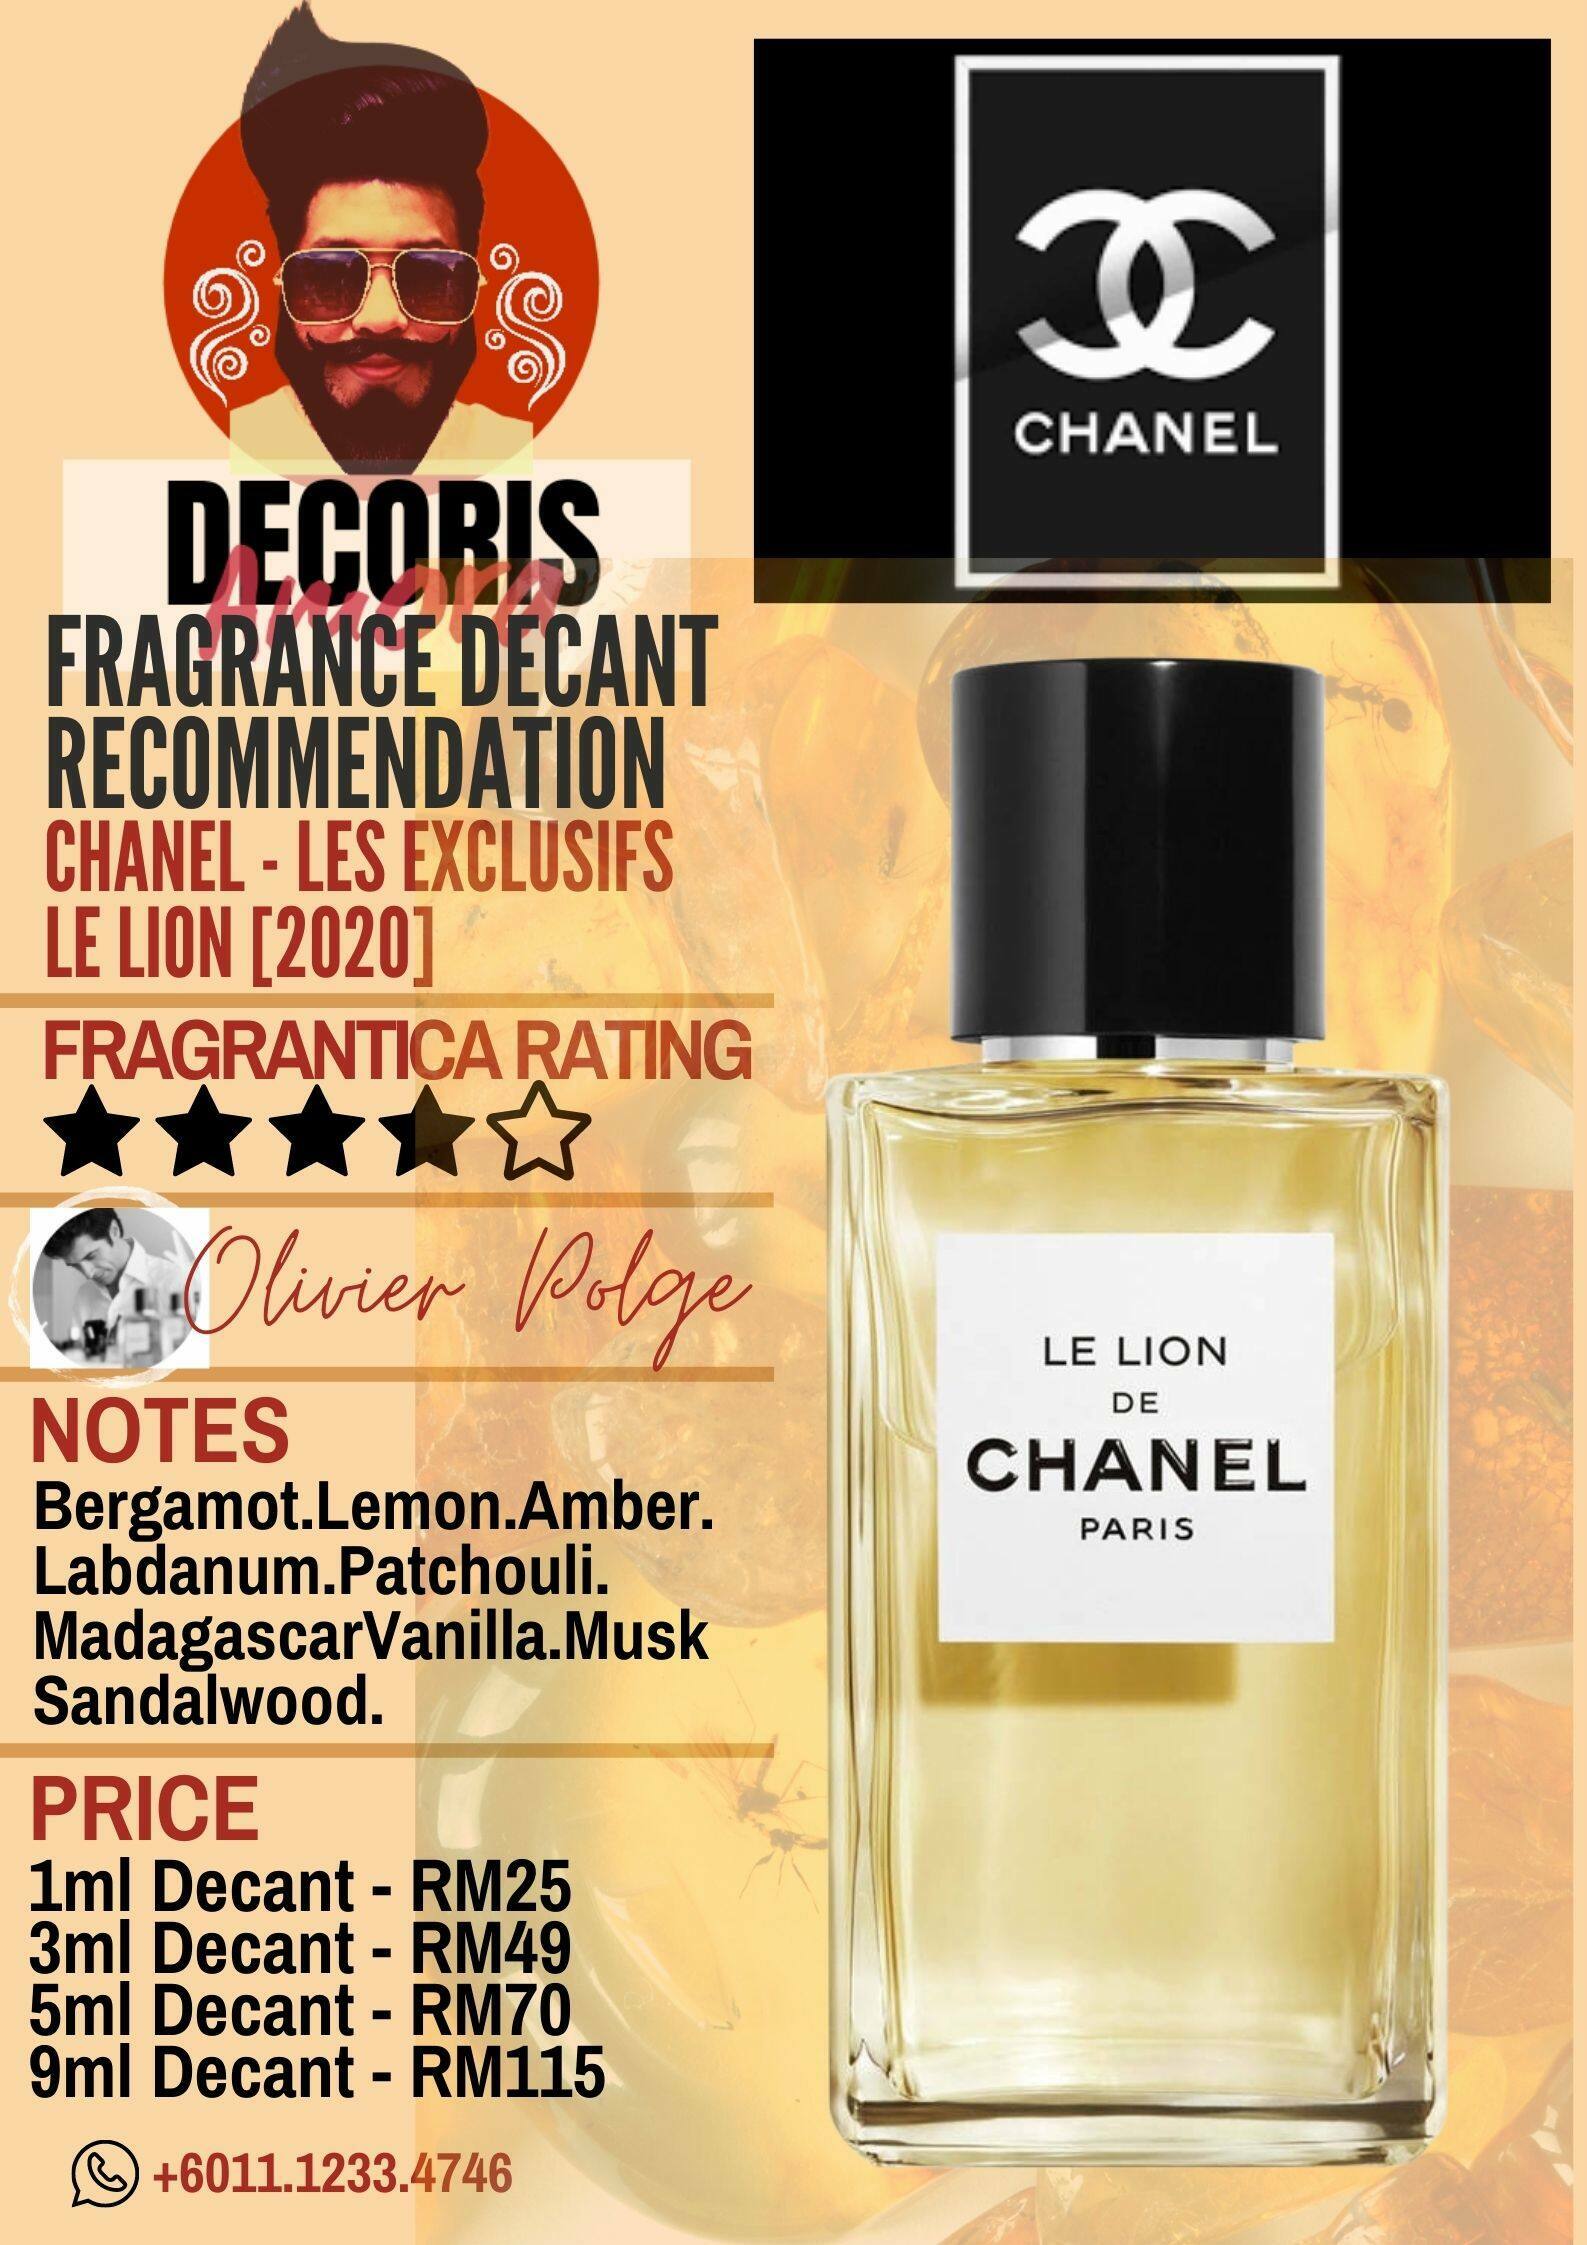 Le Lion de Chanel Eau de Parfum Review - Angela van Rose